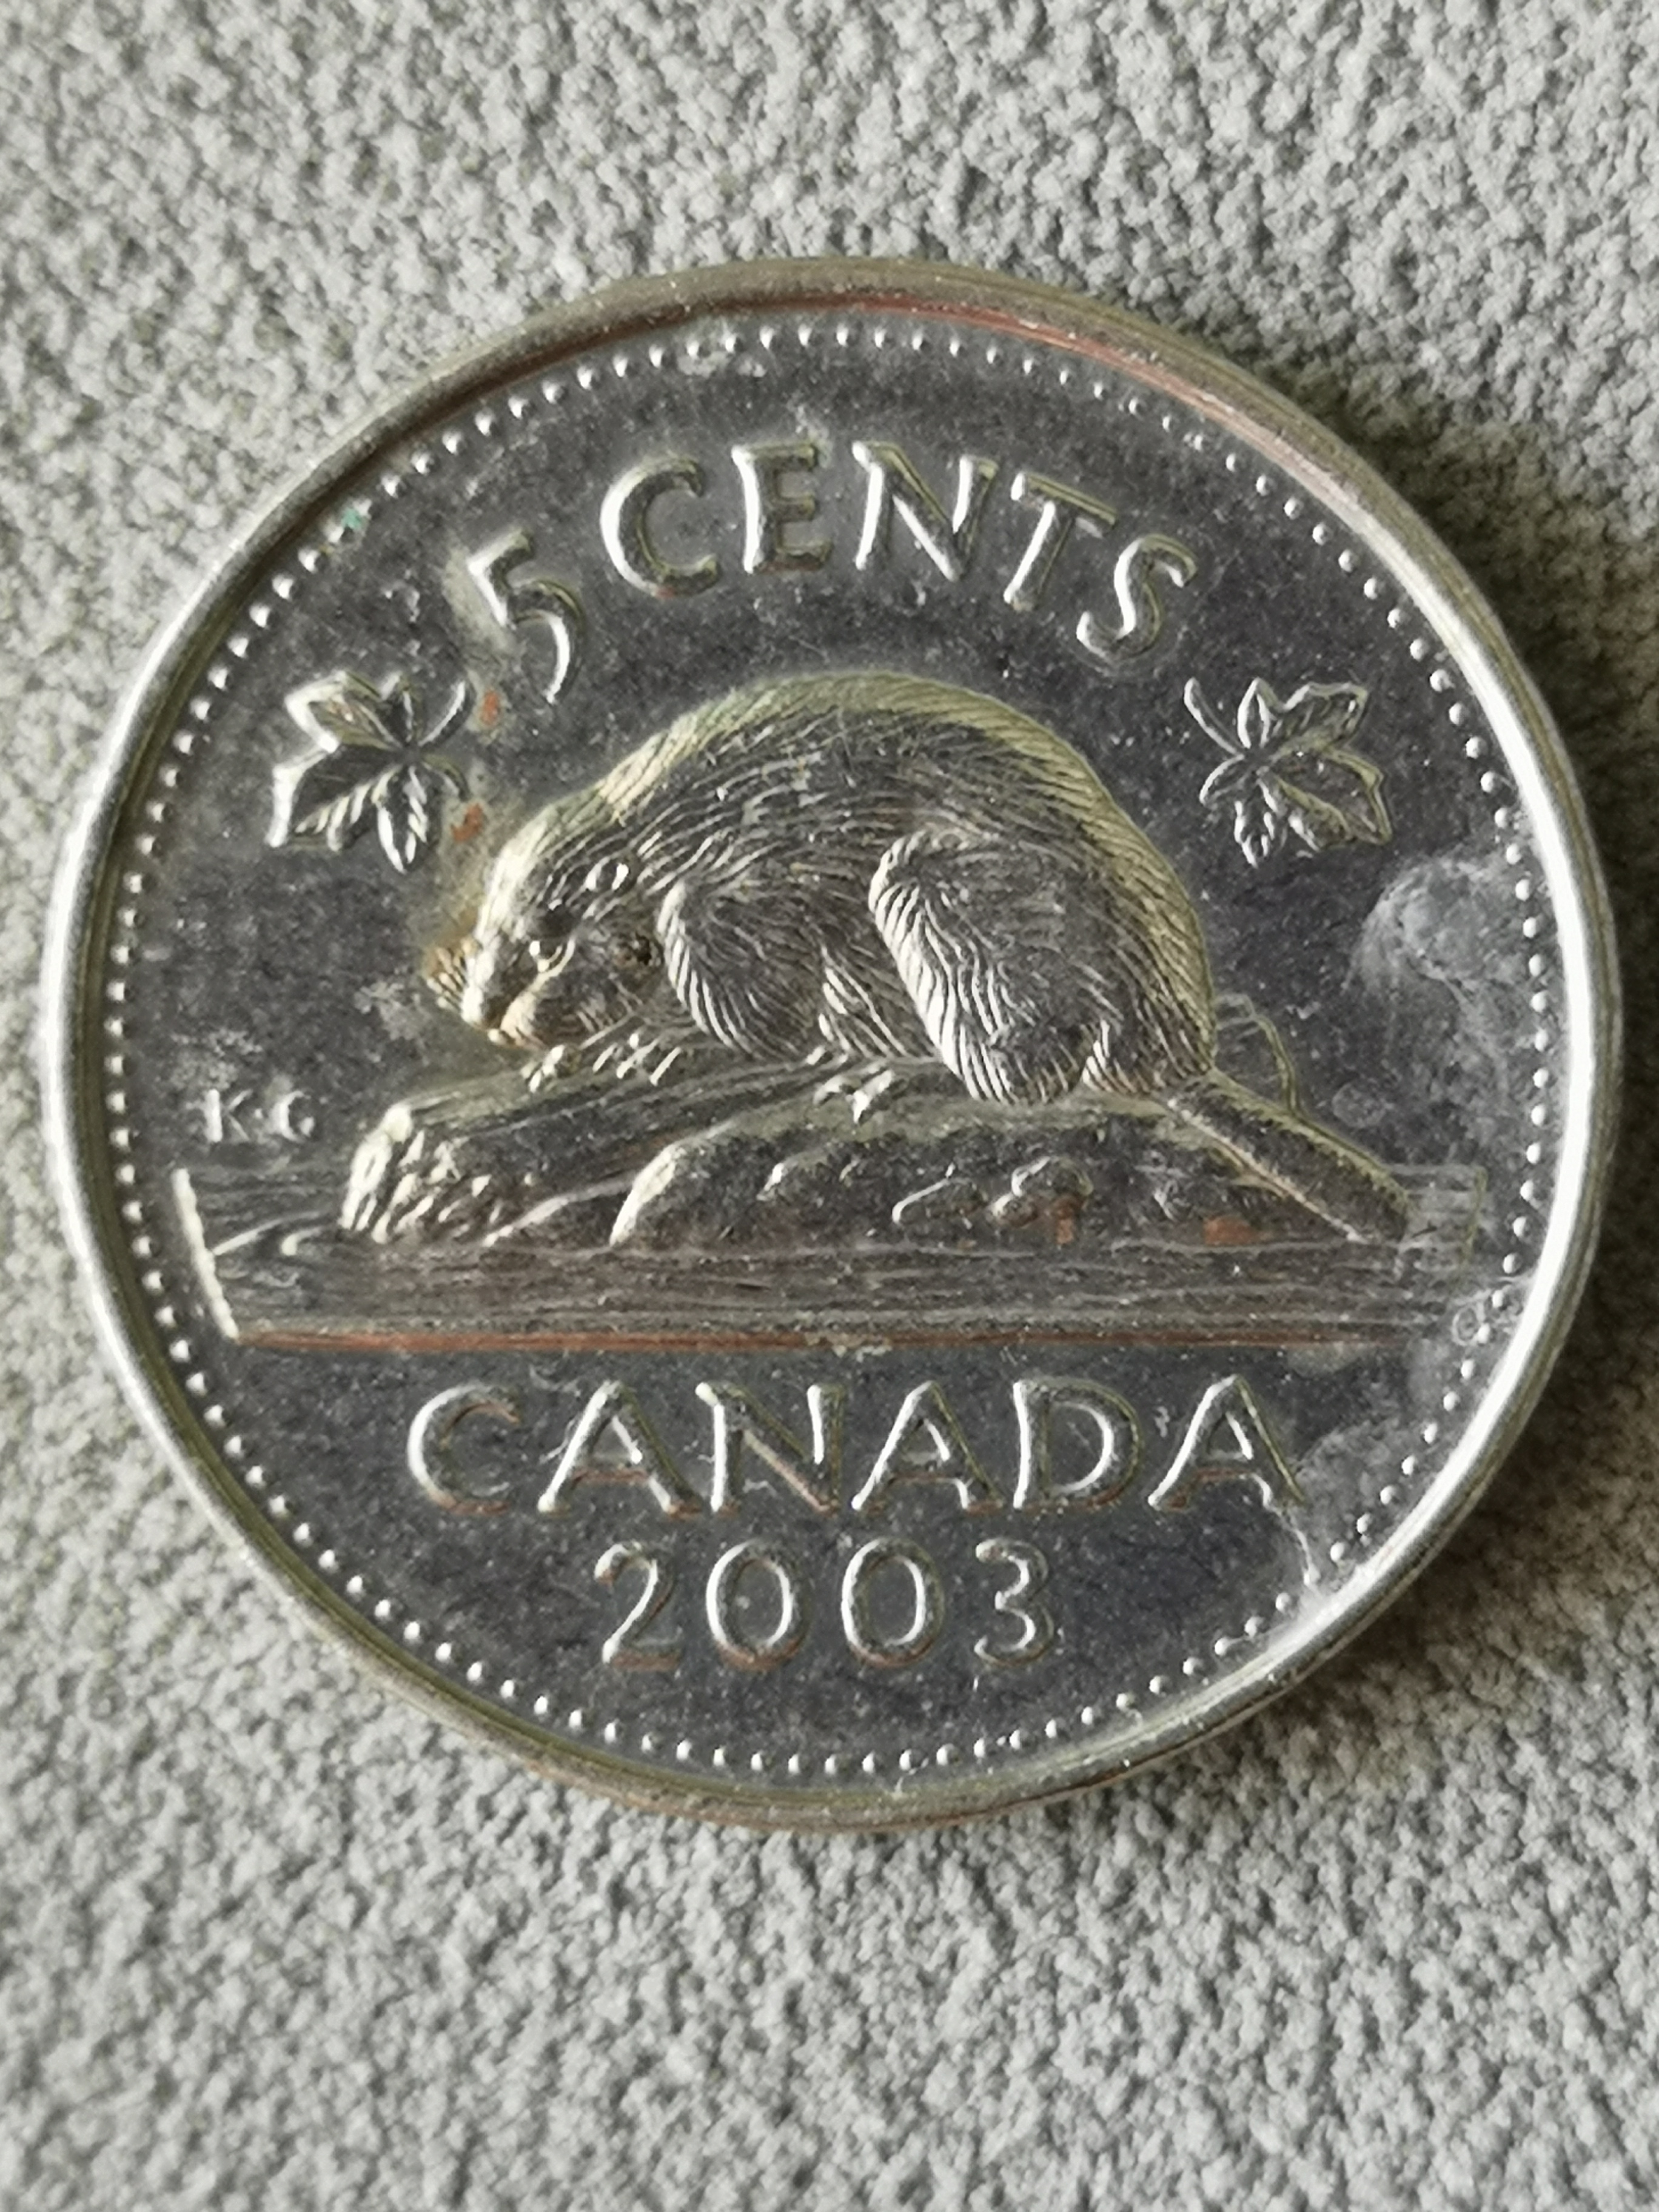 加拿大硬币面额图片